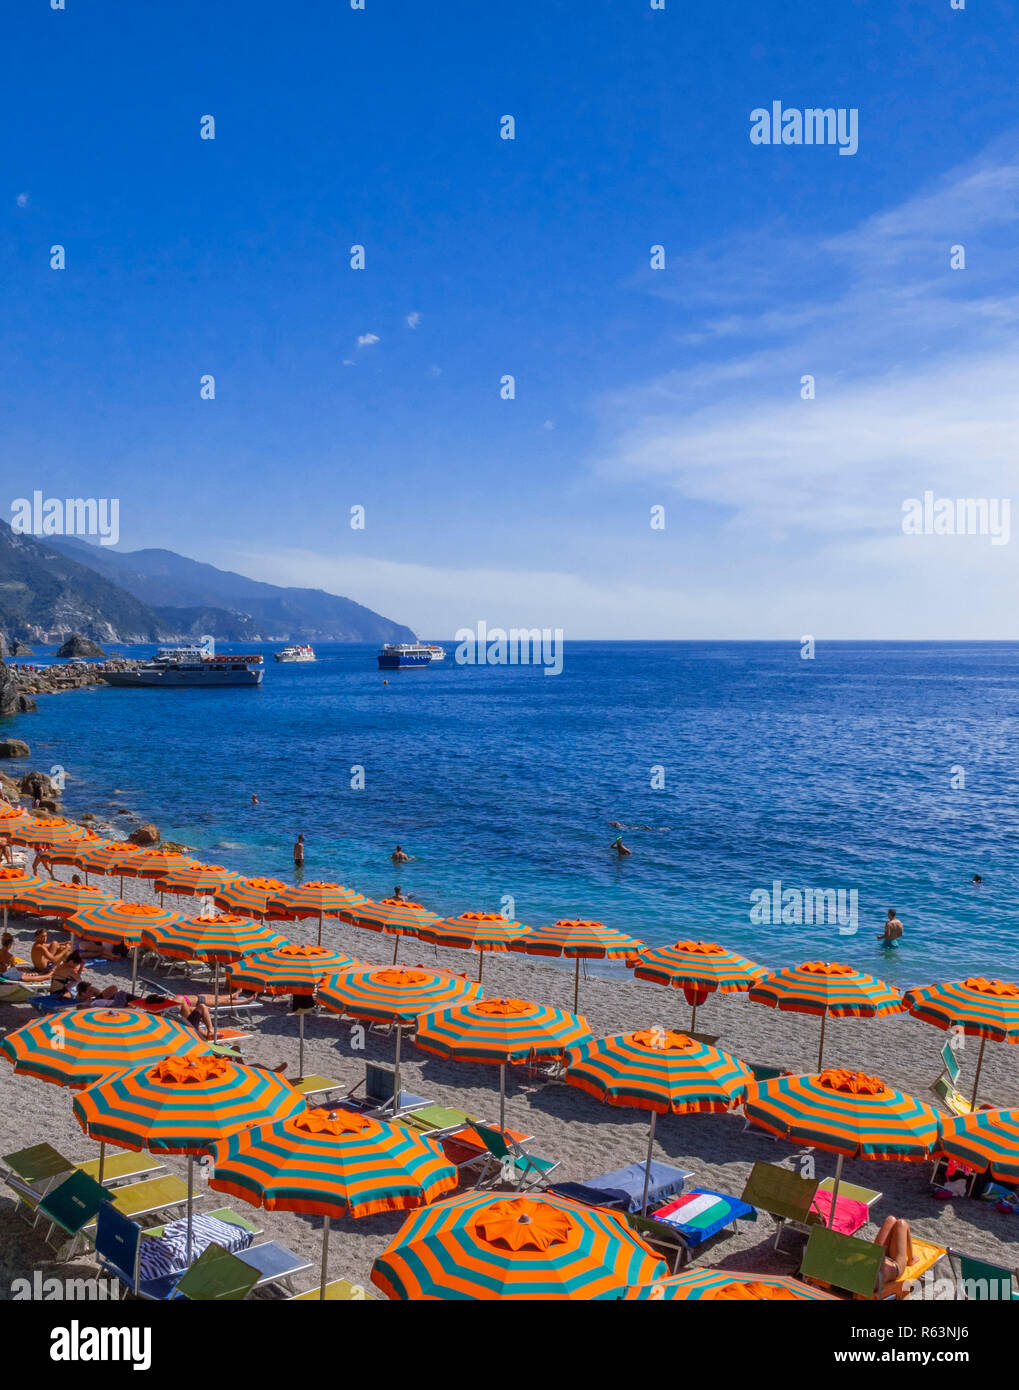 Spiaggia di Monterosso al Mare, Cinque Terre Riviera di Levante, provincia di La spazia, Liguria, Italia, Europa Foto Stock